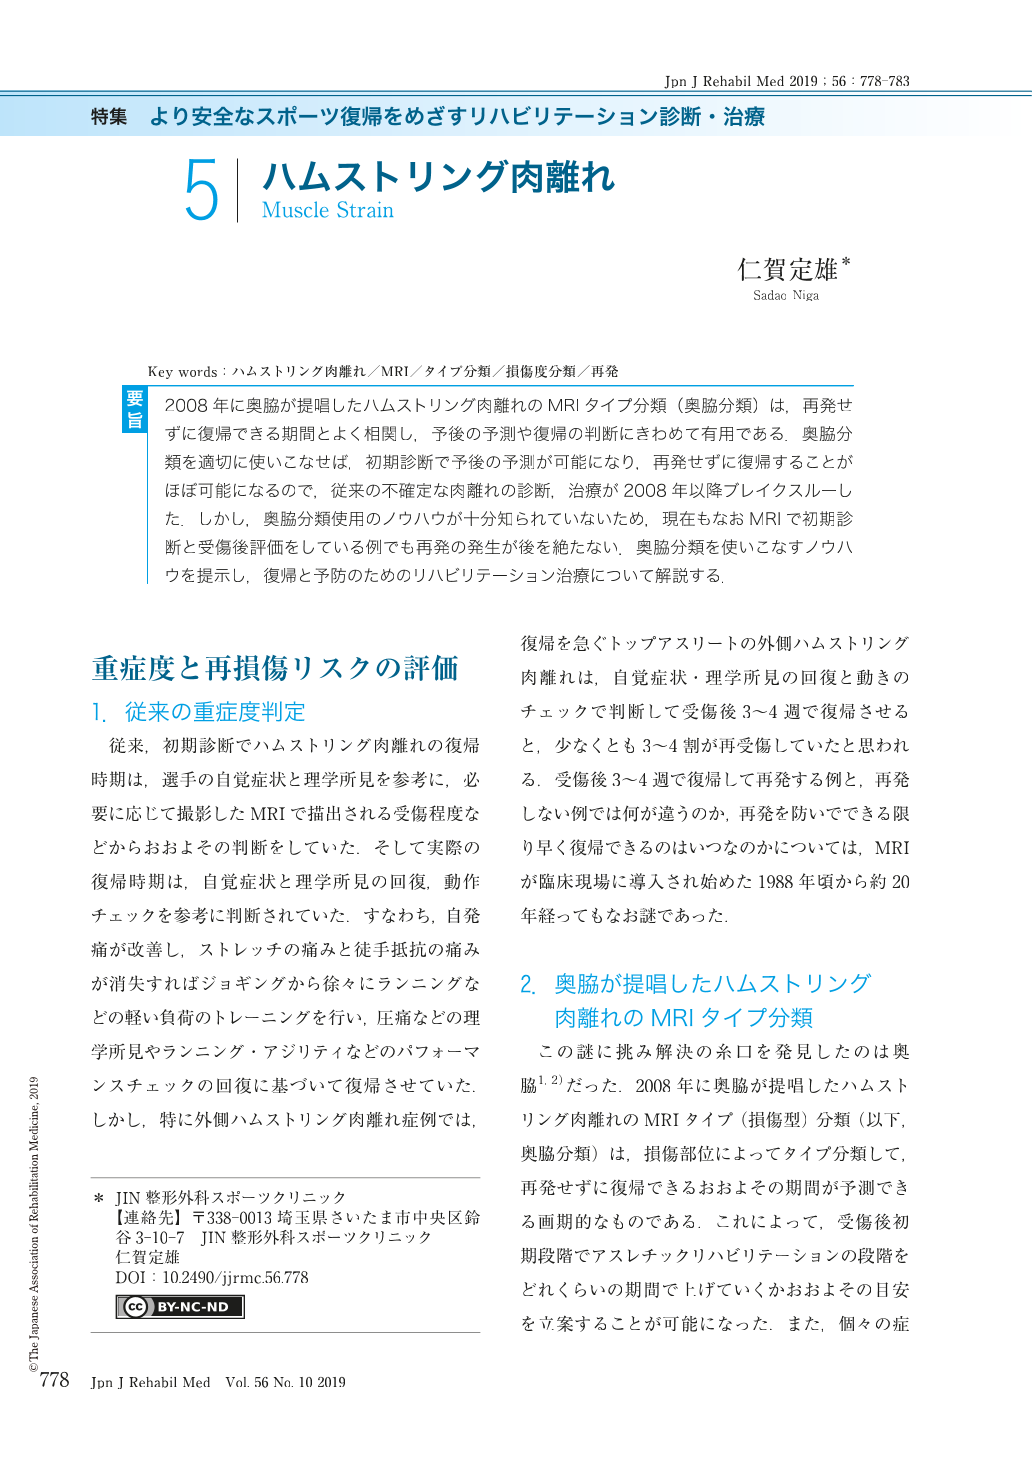 5 ハムストリング肉離れ The Japanese Journal Of Rehabilitation Medicine 56巻10号 医書 Jp